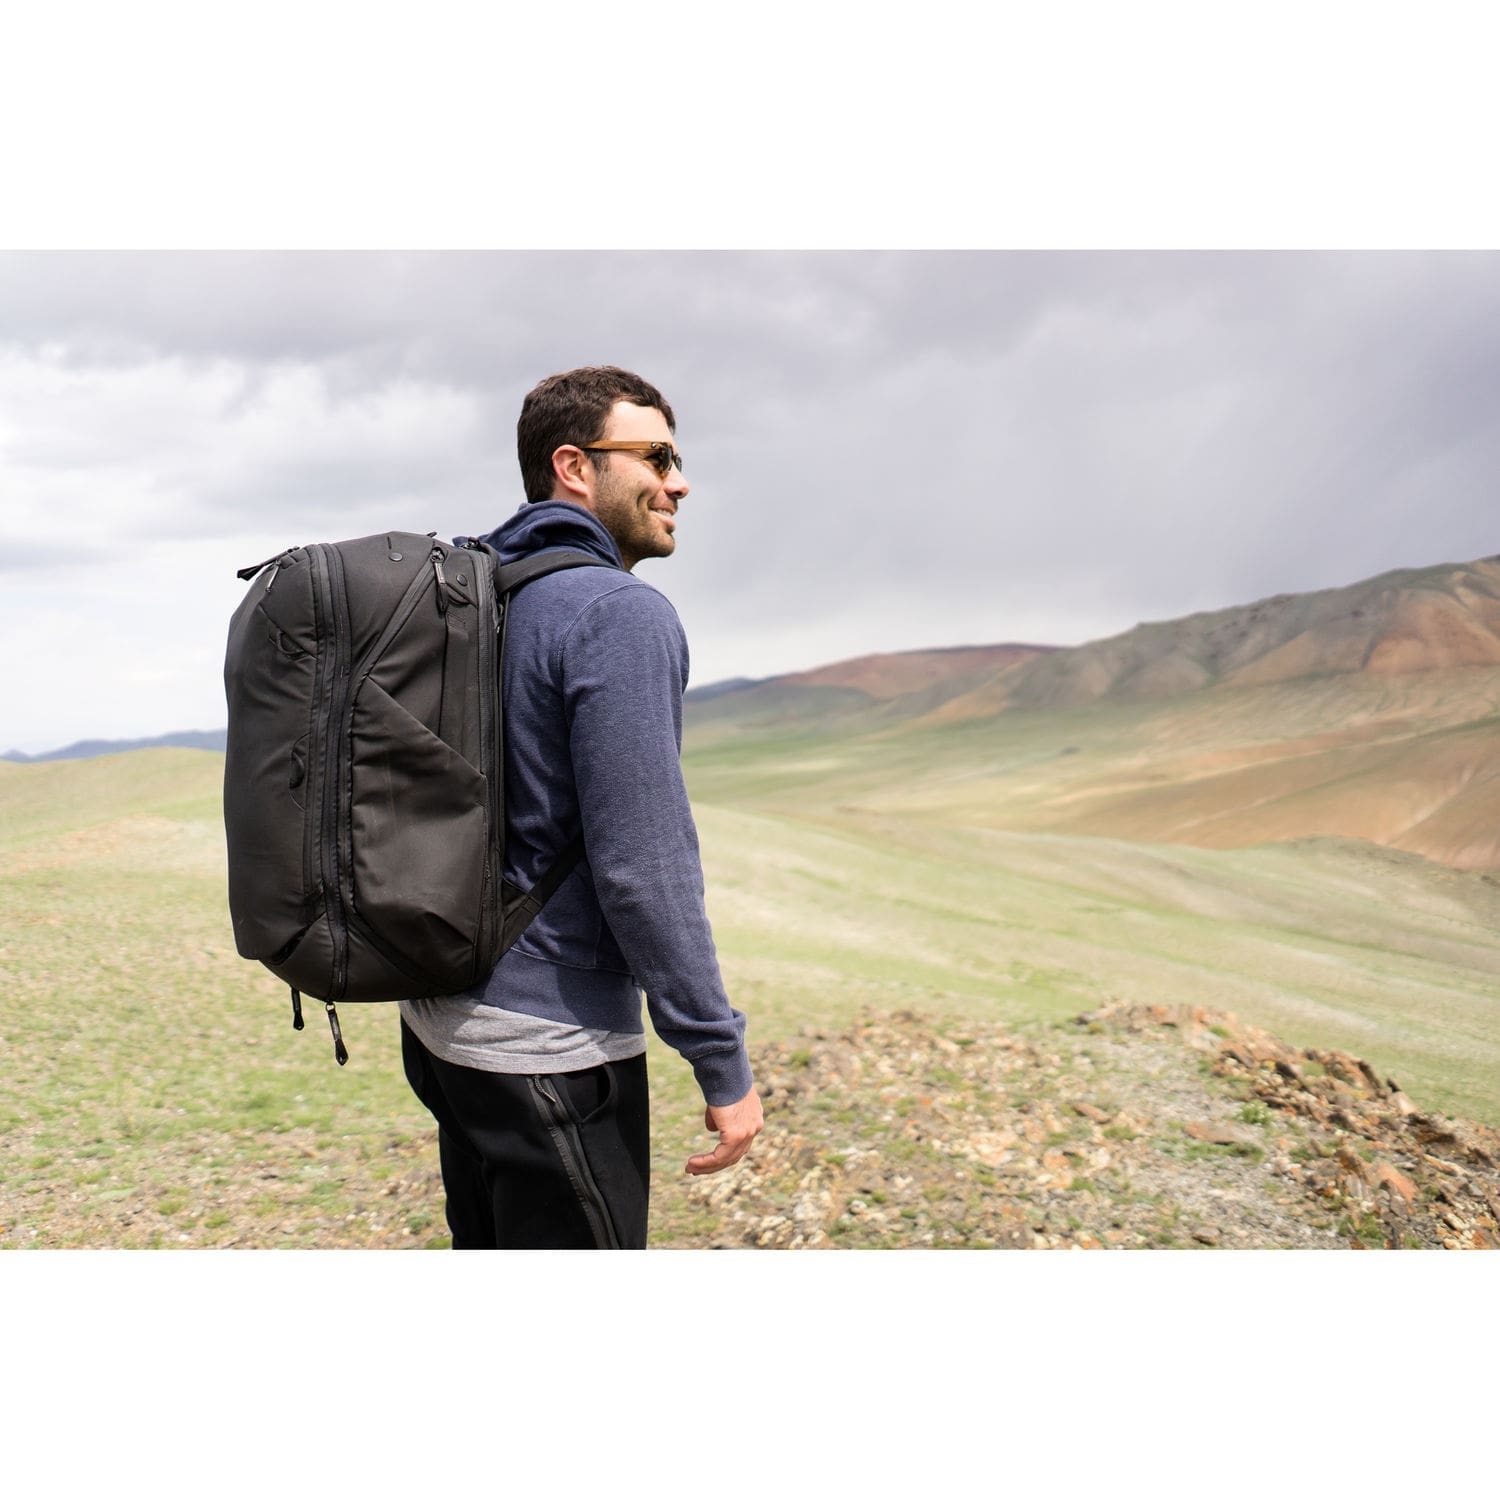 Peak Design Travel Backpack 45L schwarz